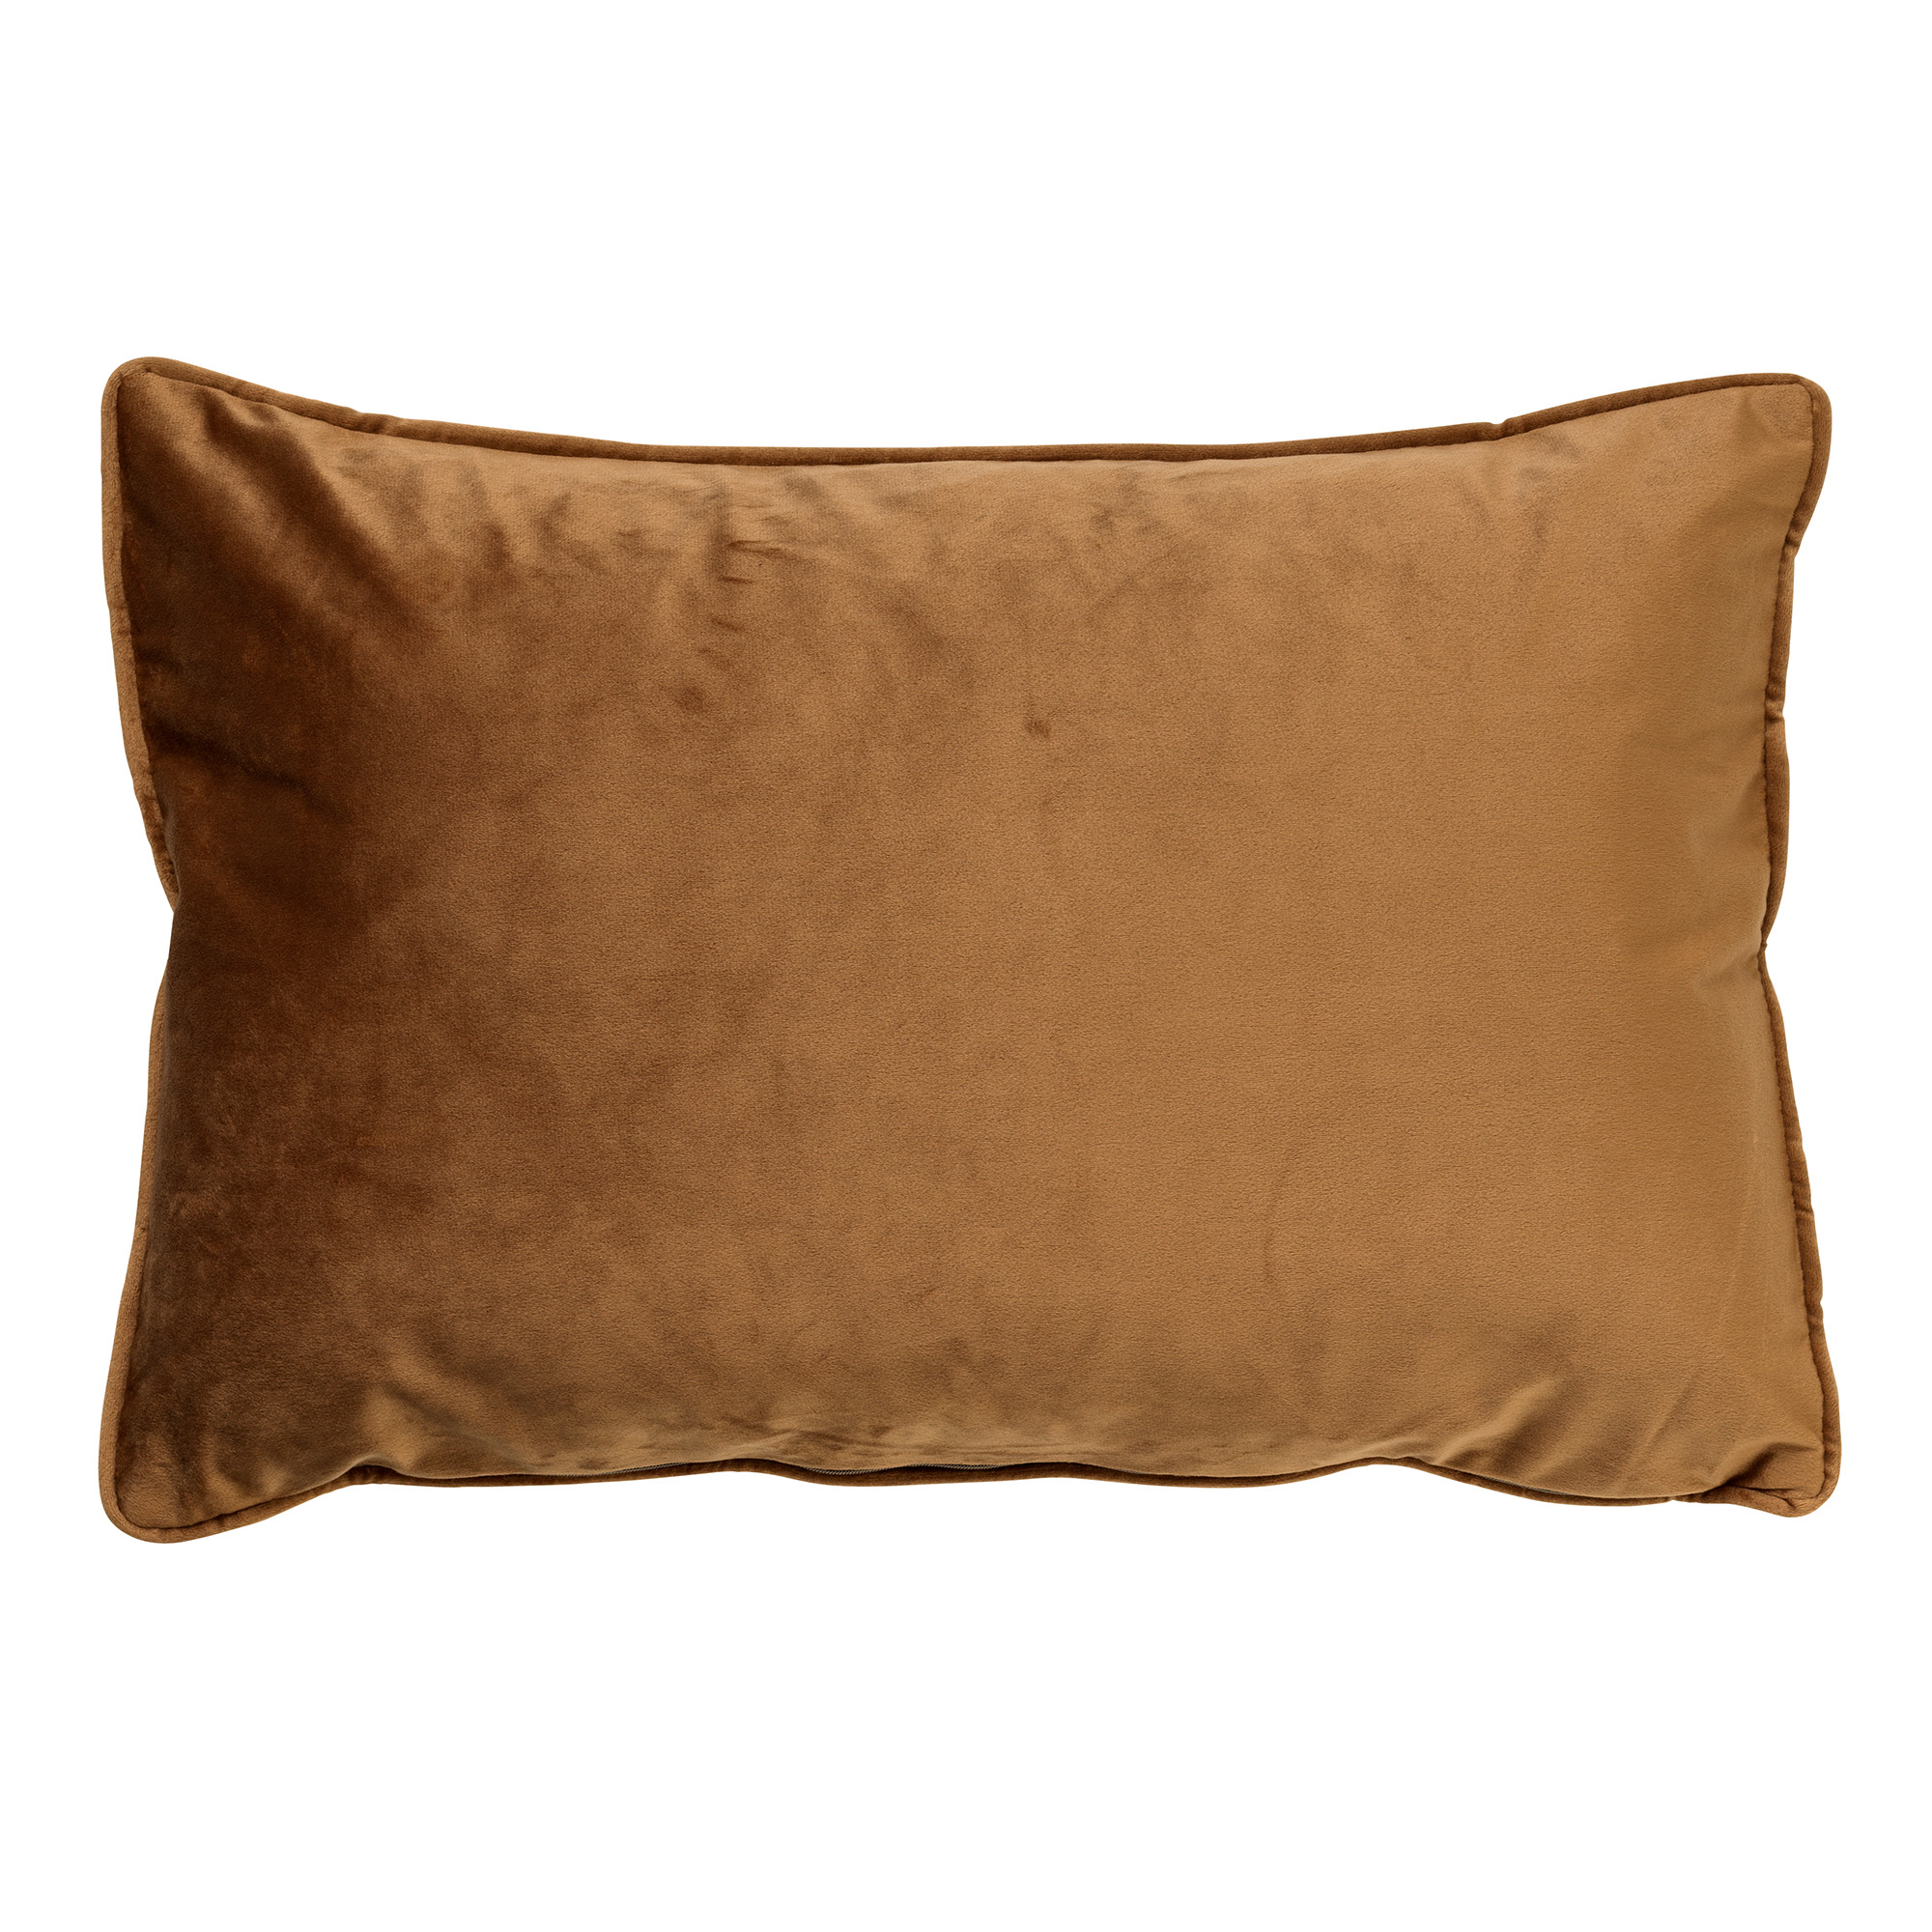 FINN - Cushion velvet 40x60 cm - Tobacco Brown - brown